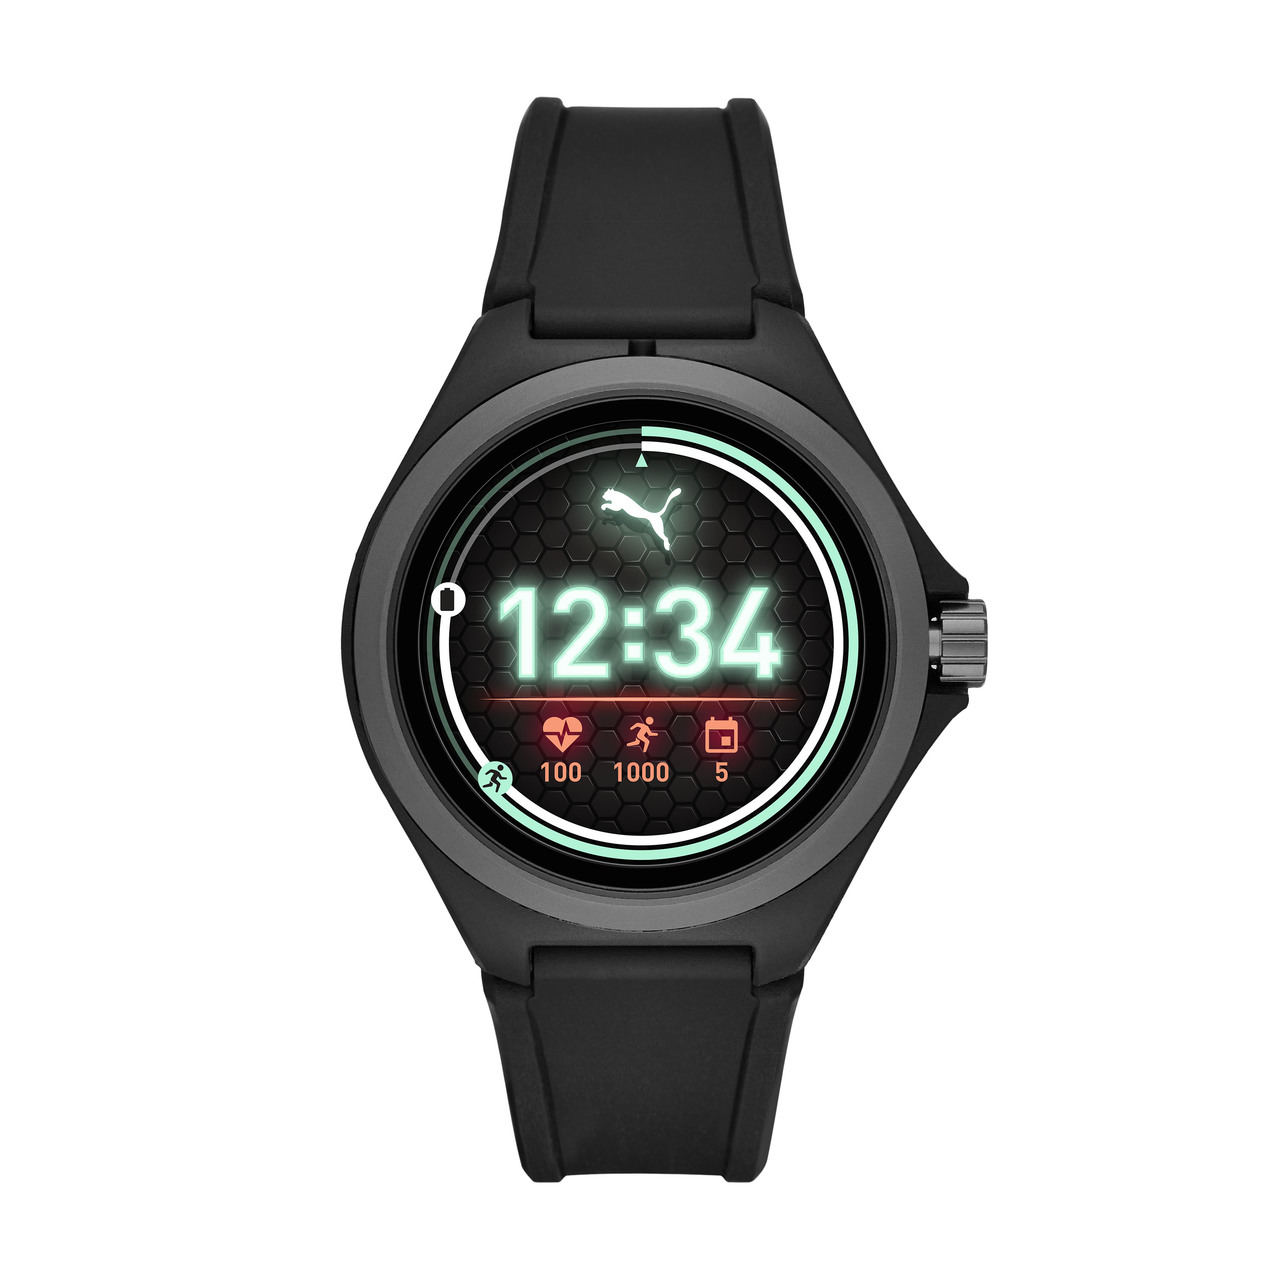 Smartwatch Puma, el primer wearable de la marca deportiva